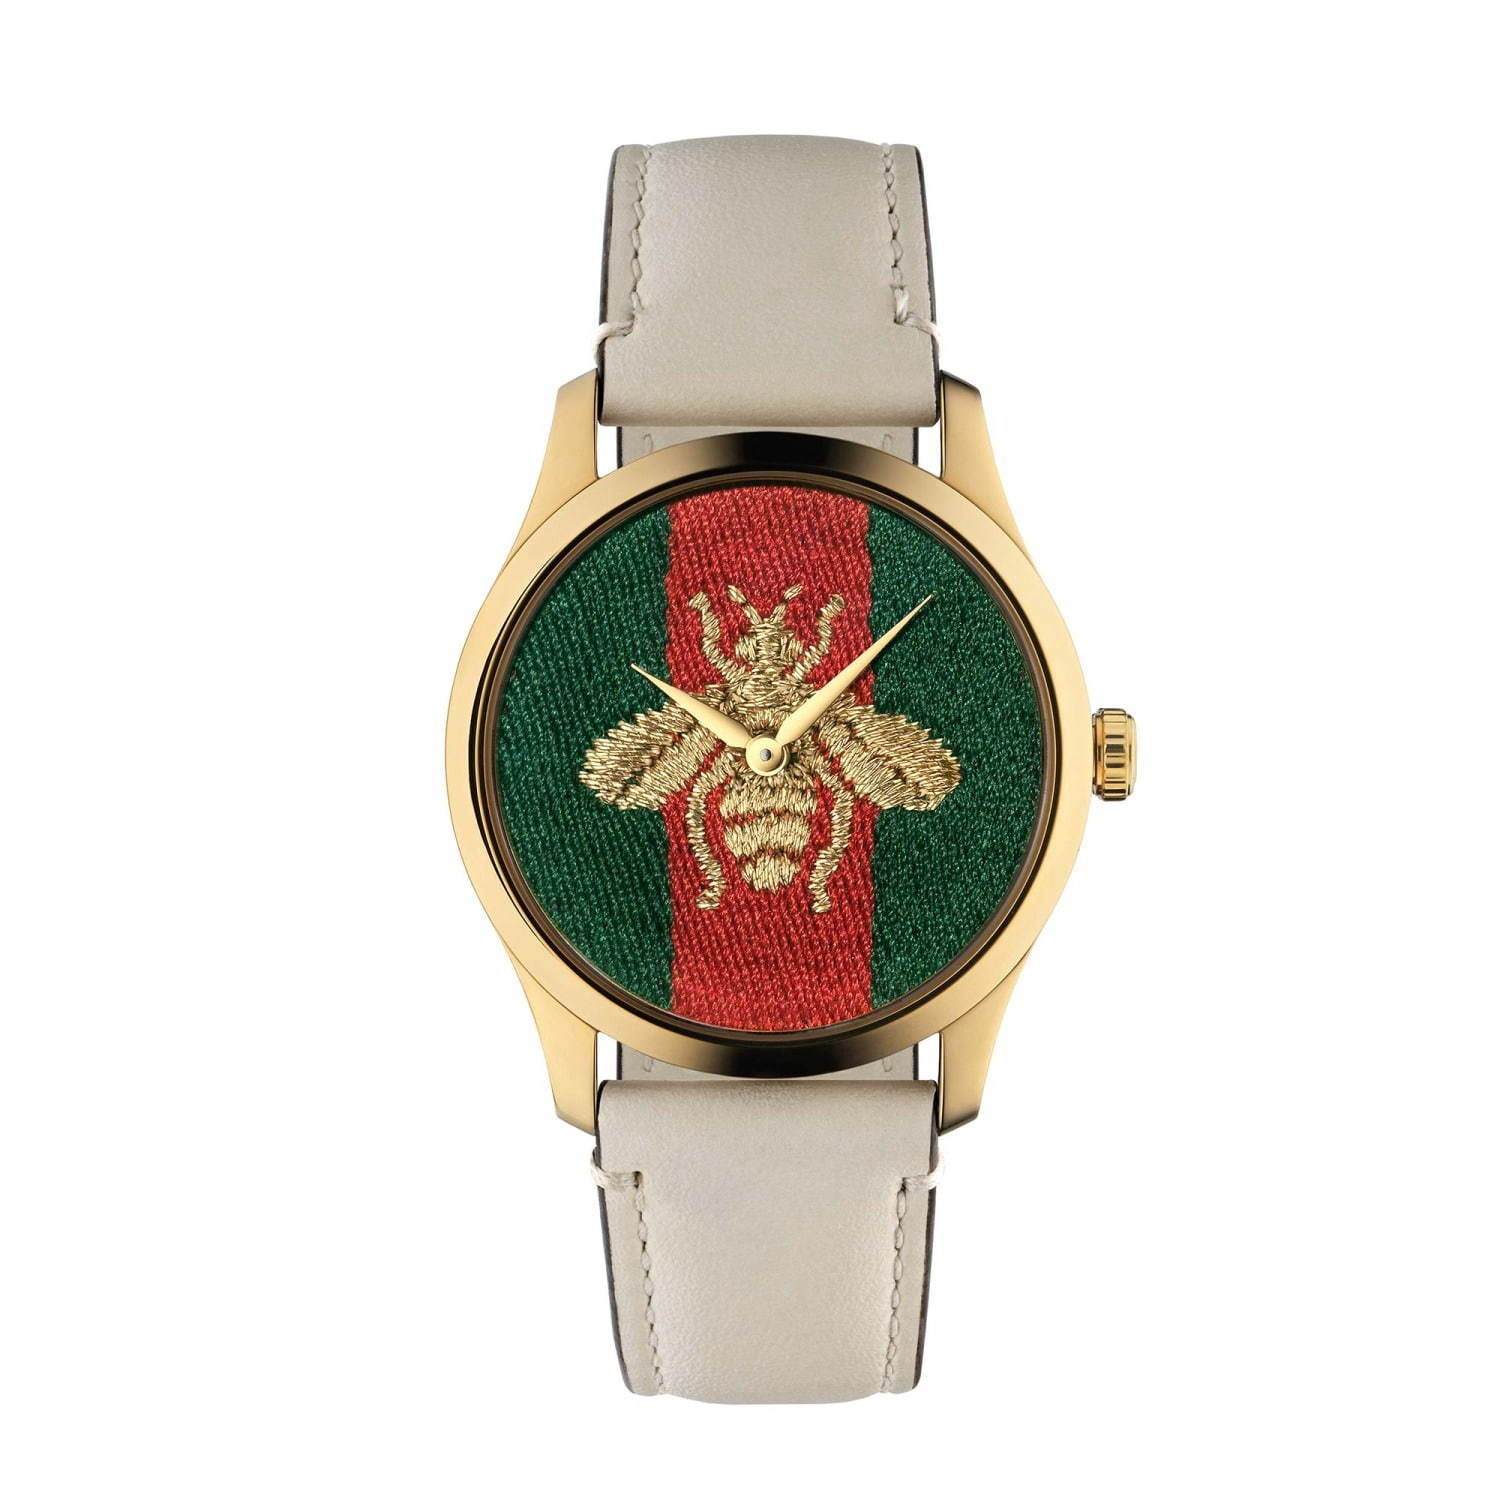 グッチの腕時計「G-タイムレス」新作、ビー モチーフを描いたグリーン・レッド・グリーンの文字盤 | 写真